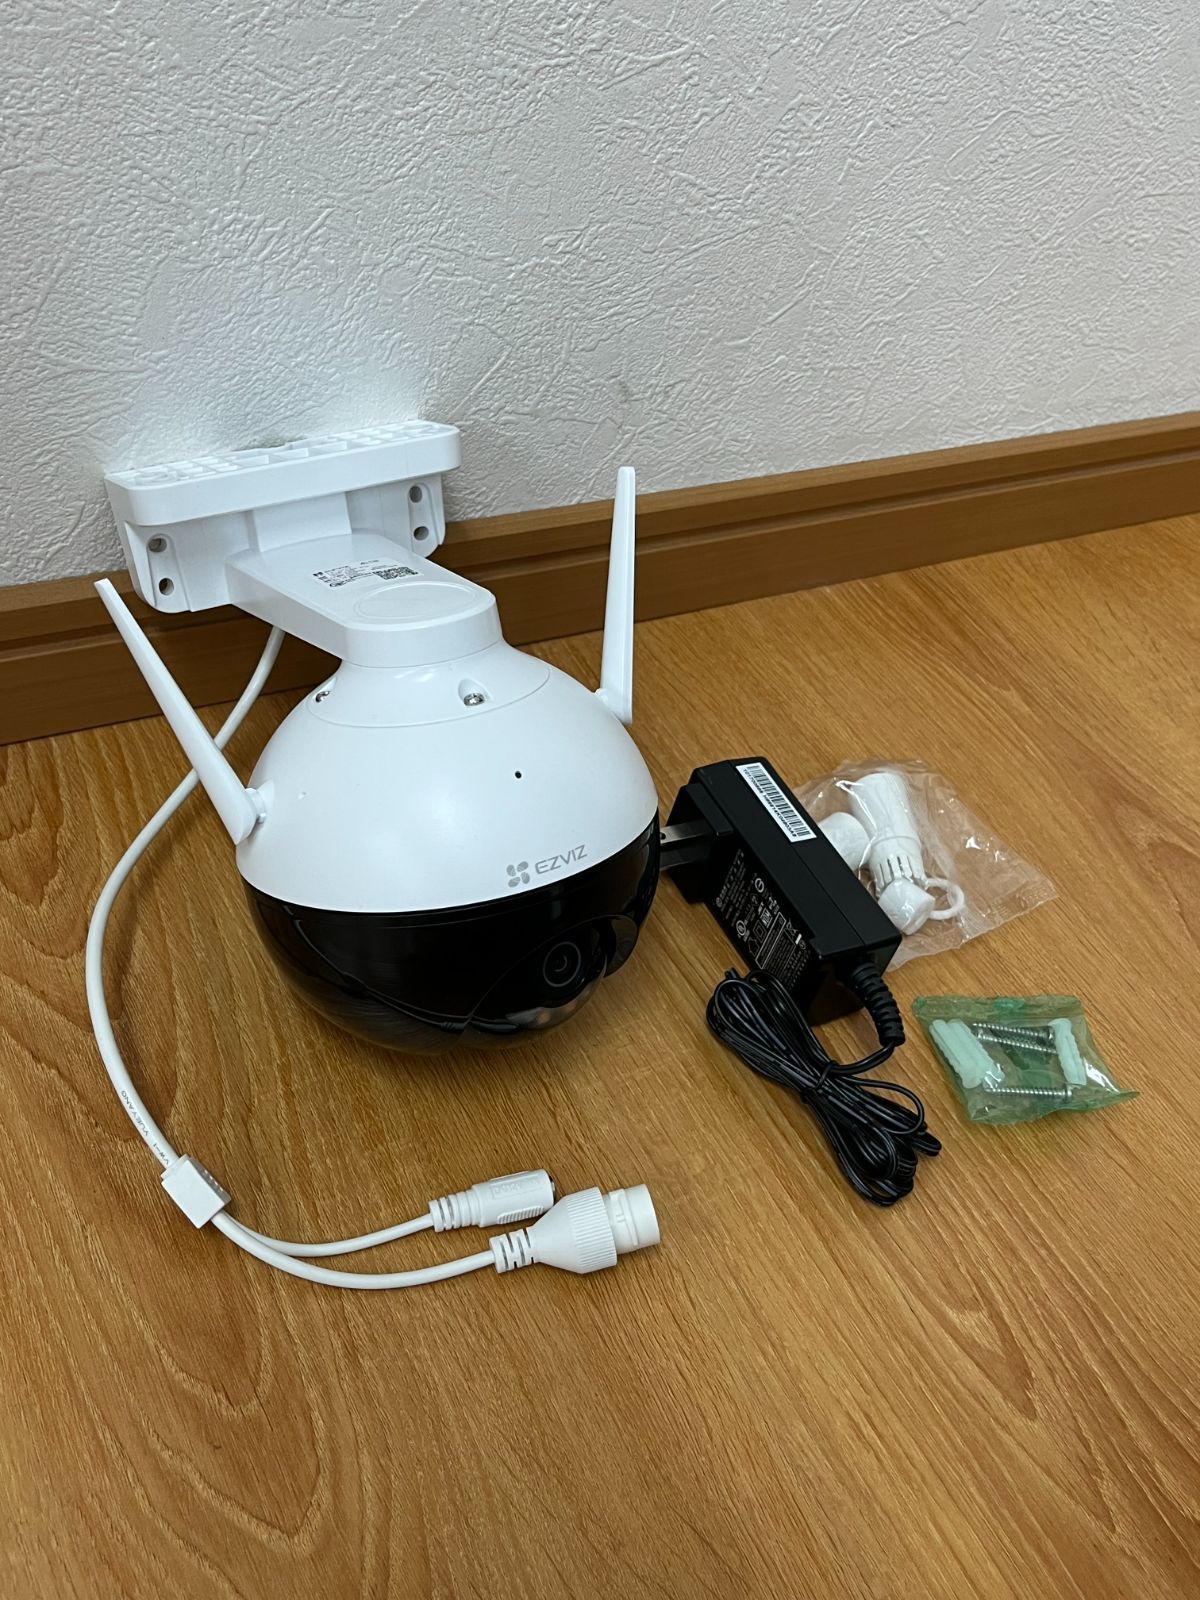 未使用品 EZVIZ パンチルト対応 人型自動追跡 夜間対応 防犯カメラ C8C-1